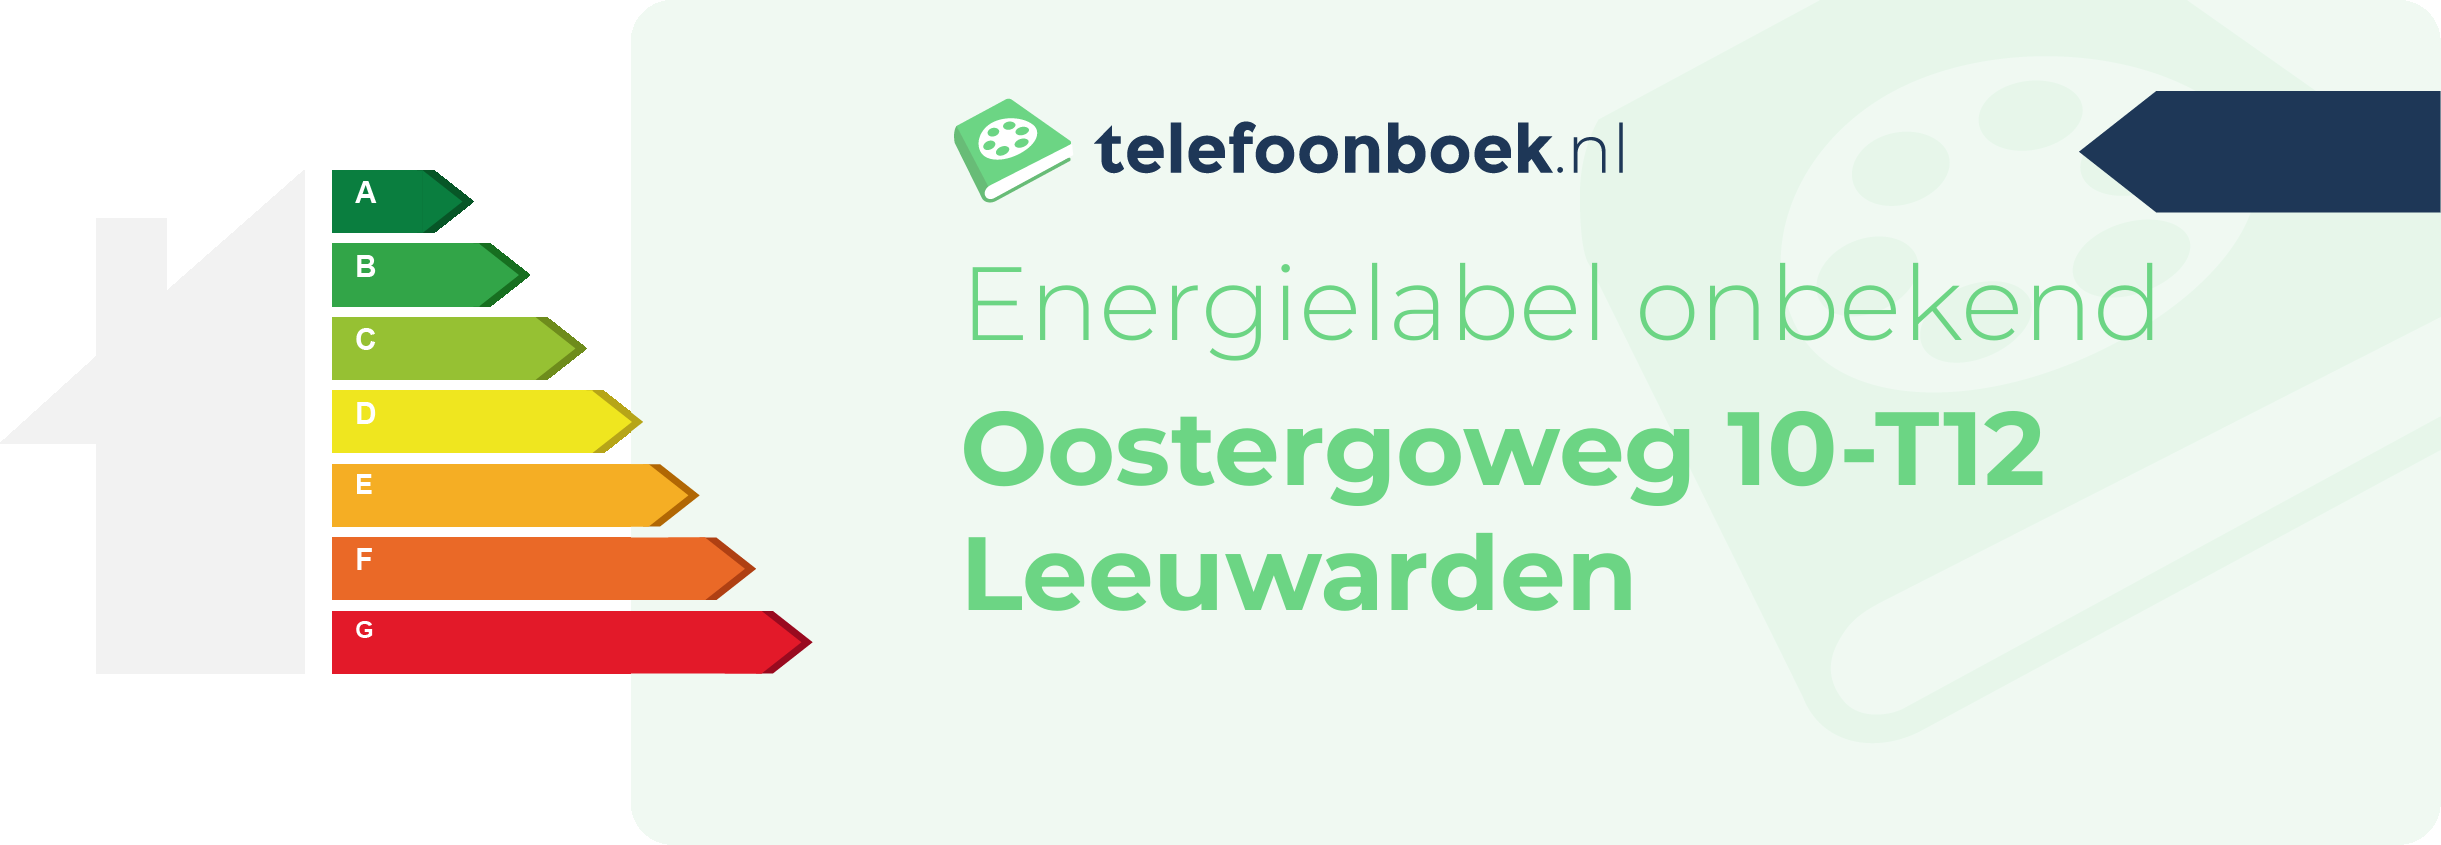 Energielabel Oostergoweg 10-T12 Leeuwarden